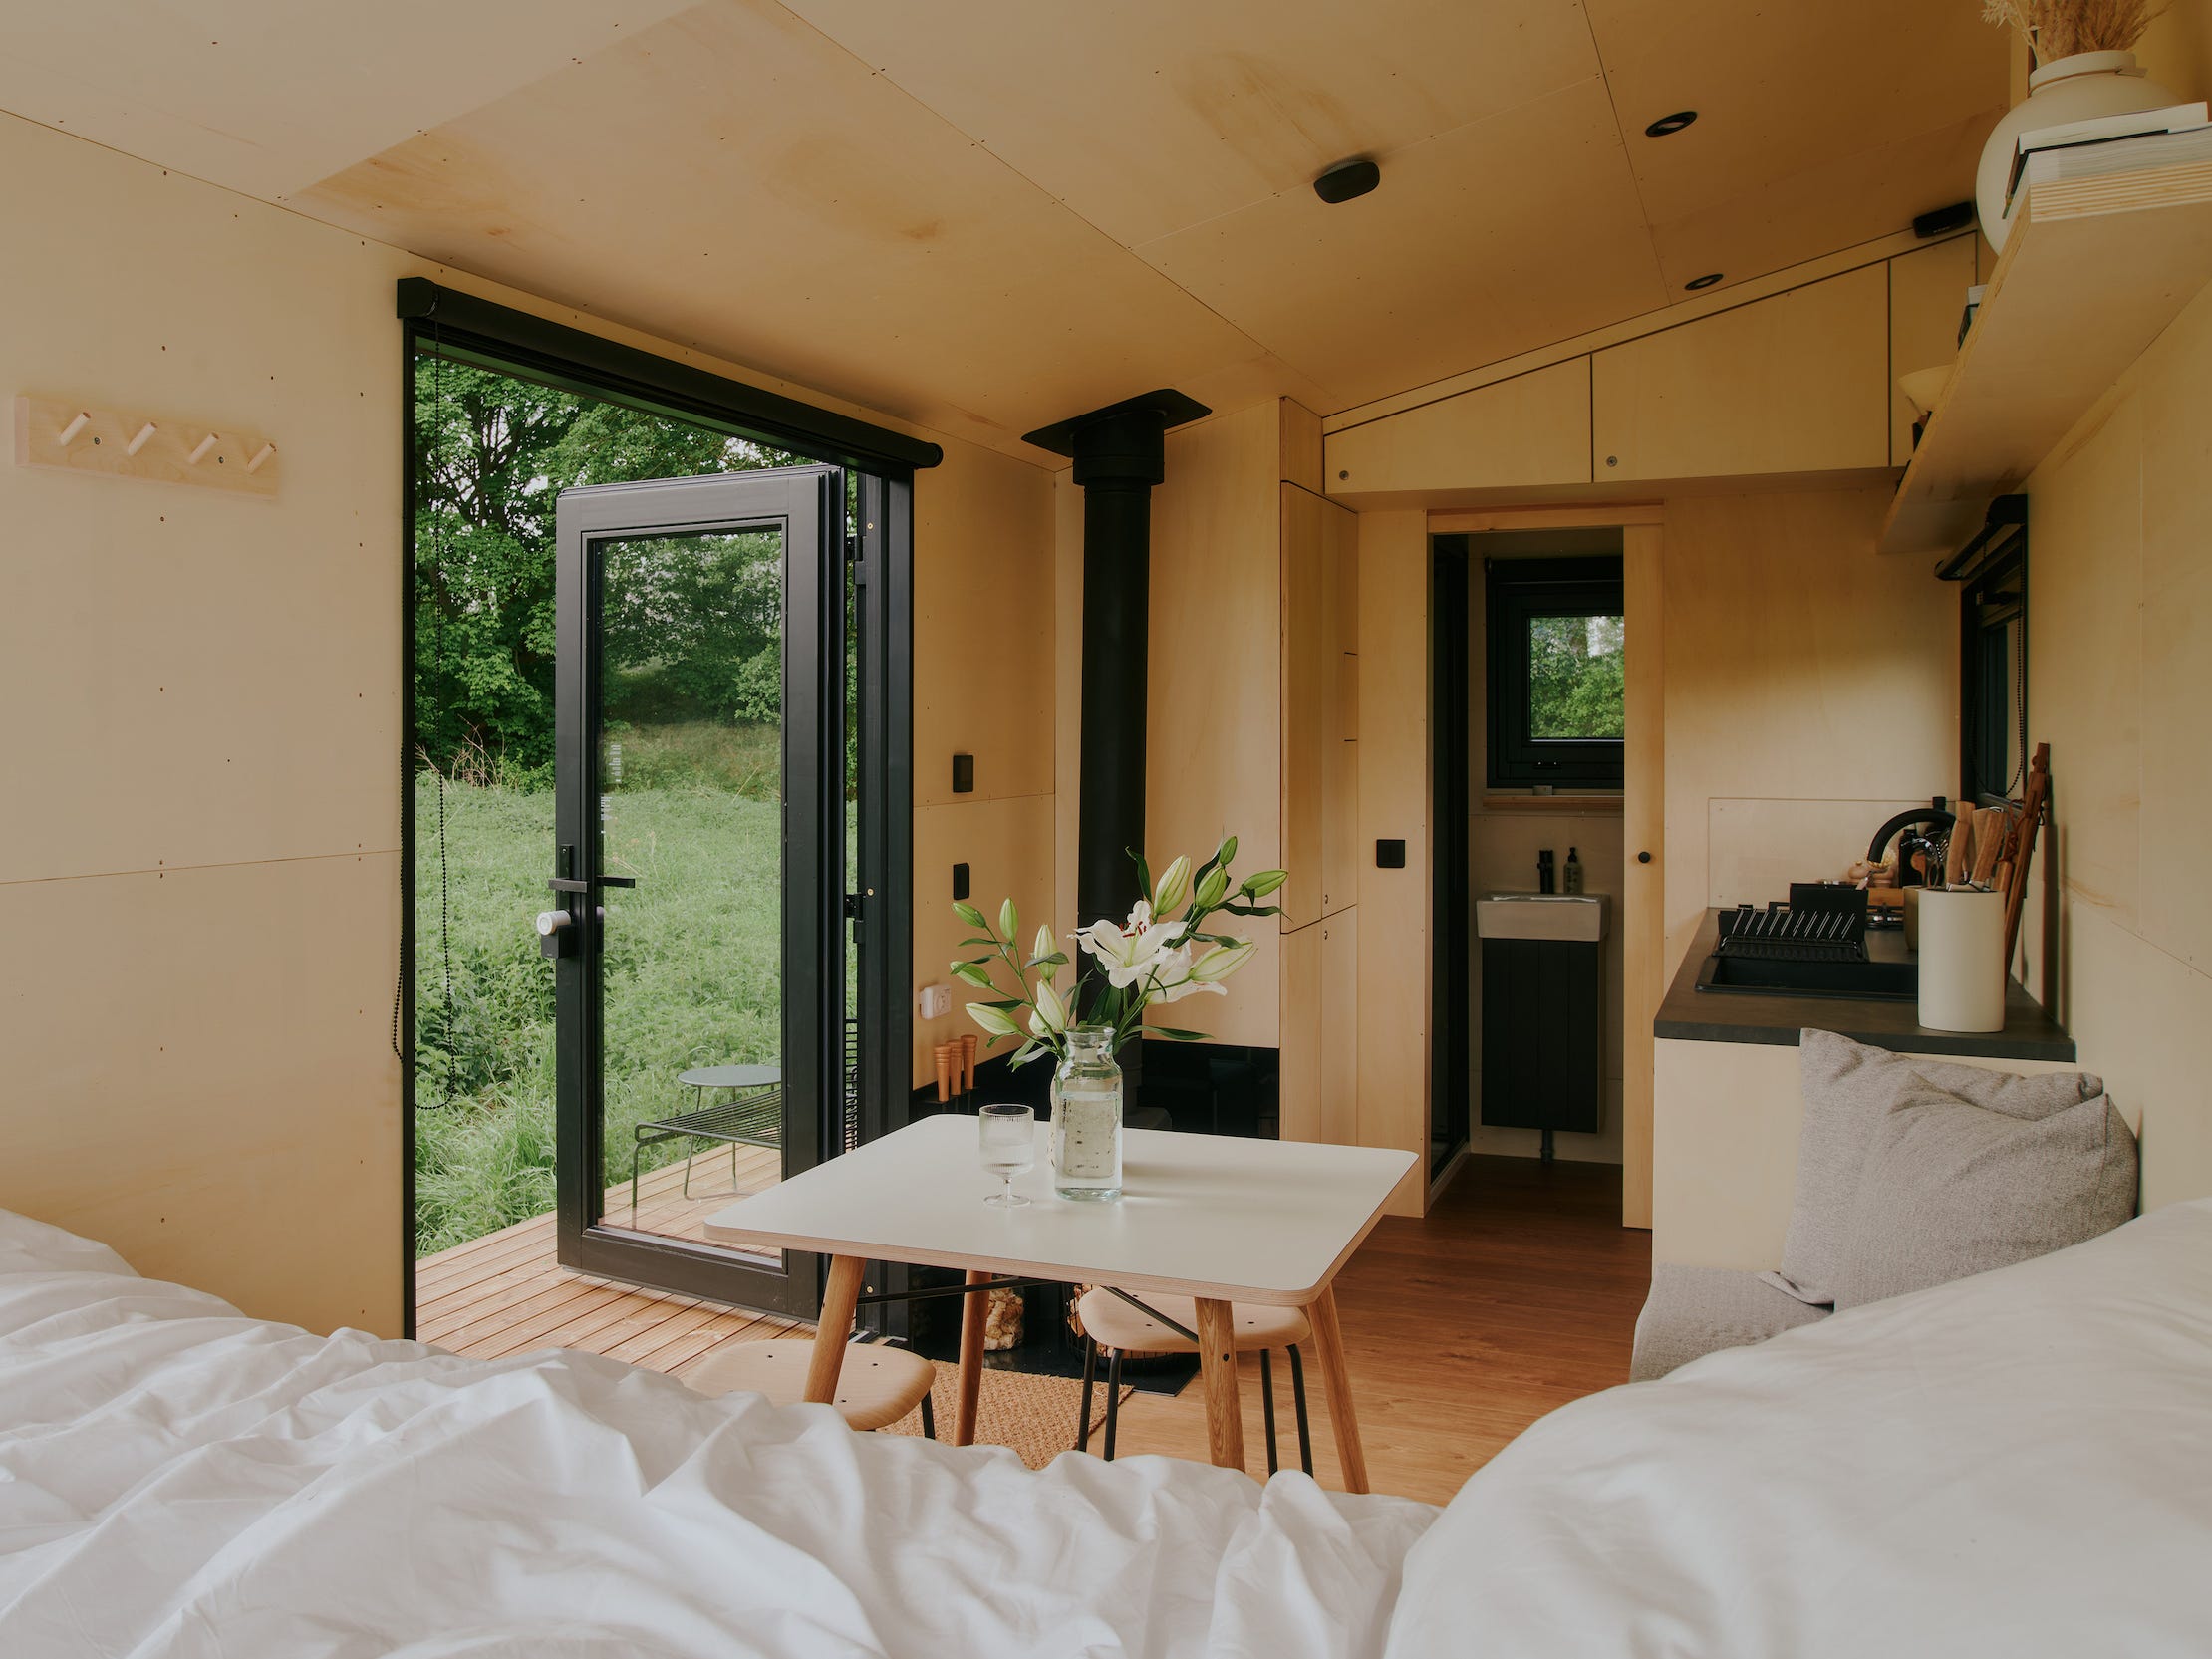 Een kijkje in een Raus-huisje met een bed, eettafel, keuken en ramen met uitzicht op de natuur.